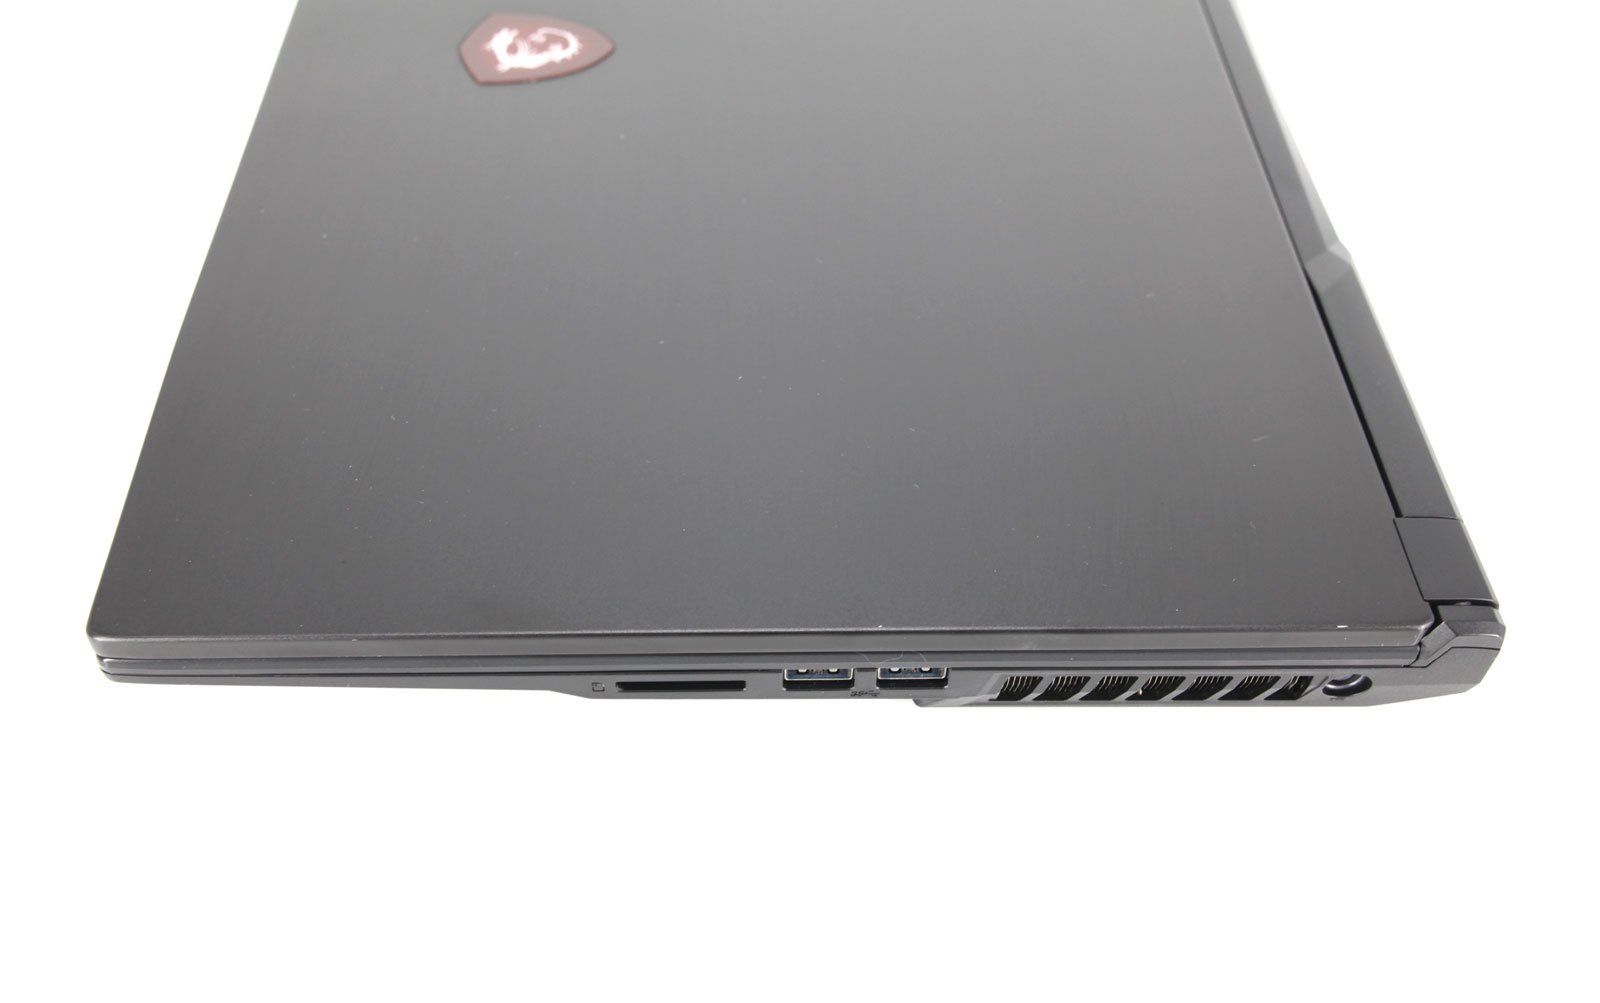 MSI GL75 Gaming Laptop: GTX 1660 Ti, Core i7-9750H, 8GB RAM, 512GB SSD, Warranty - CruiseTech